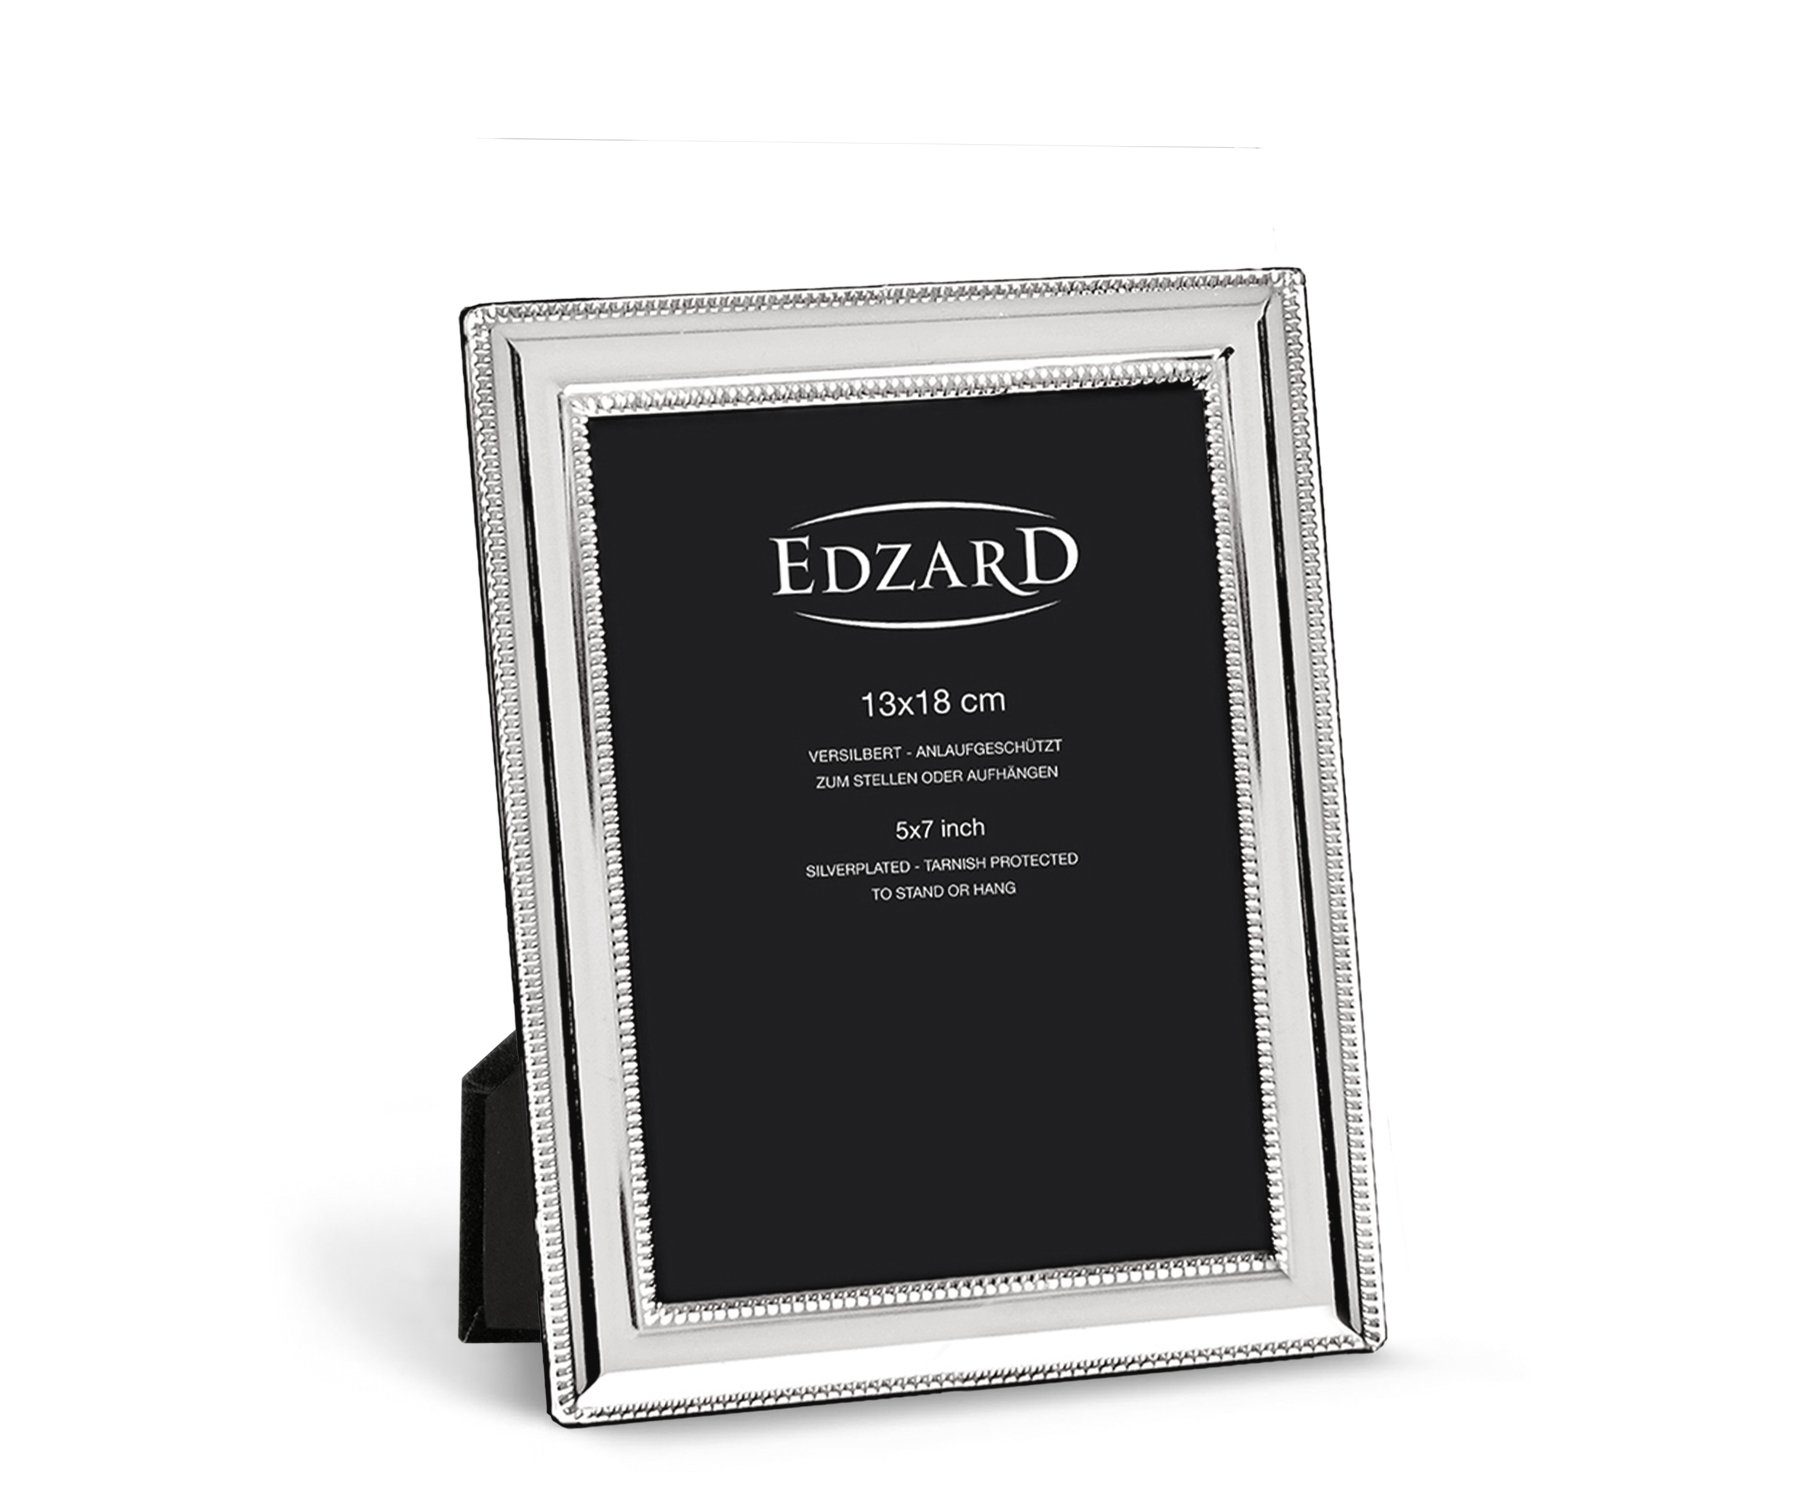 EDZARD Bilderrahmen Matera, edel versilbert und anlaufgeschützt, für 13x18 cm Foto